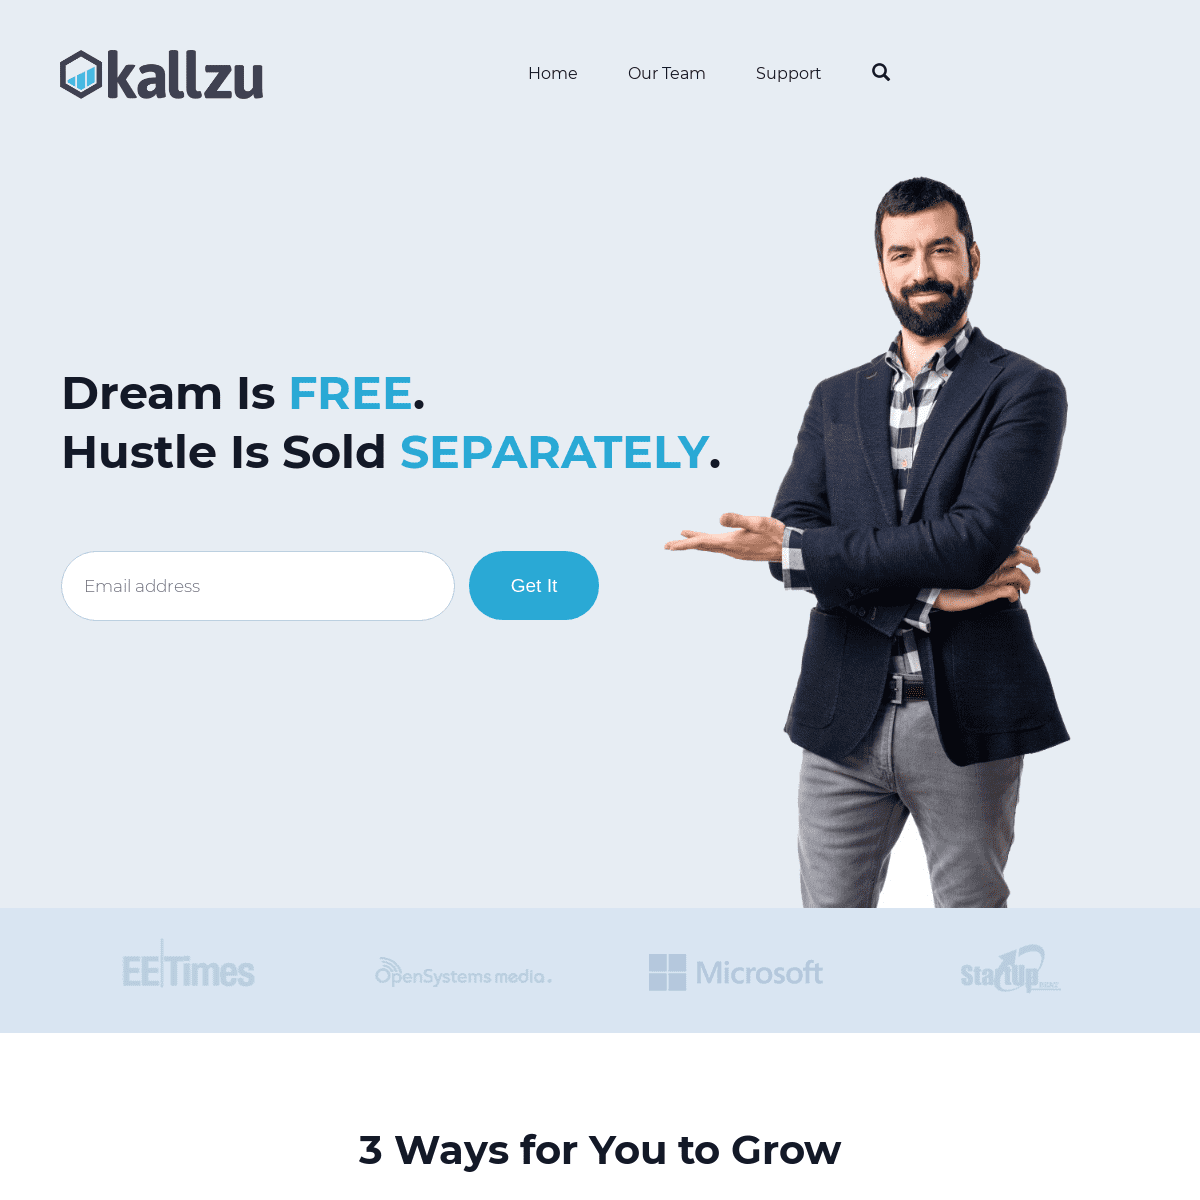 A complete backup of kallzu.com